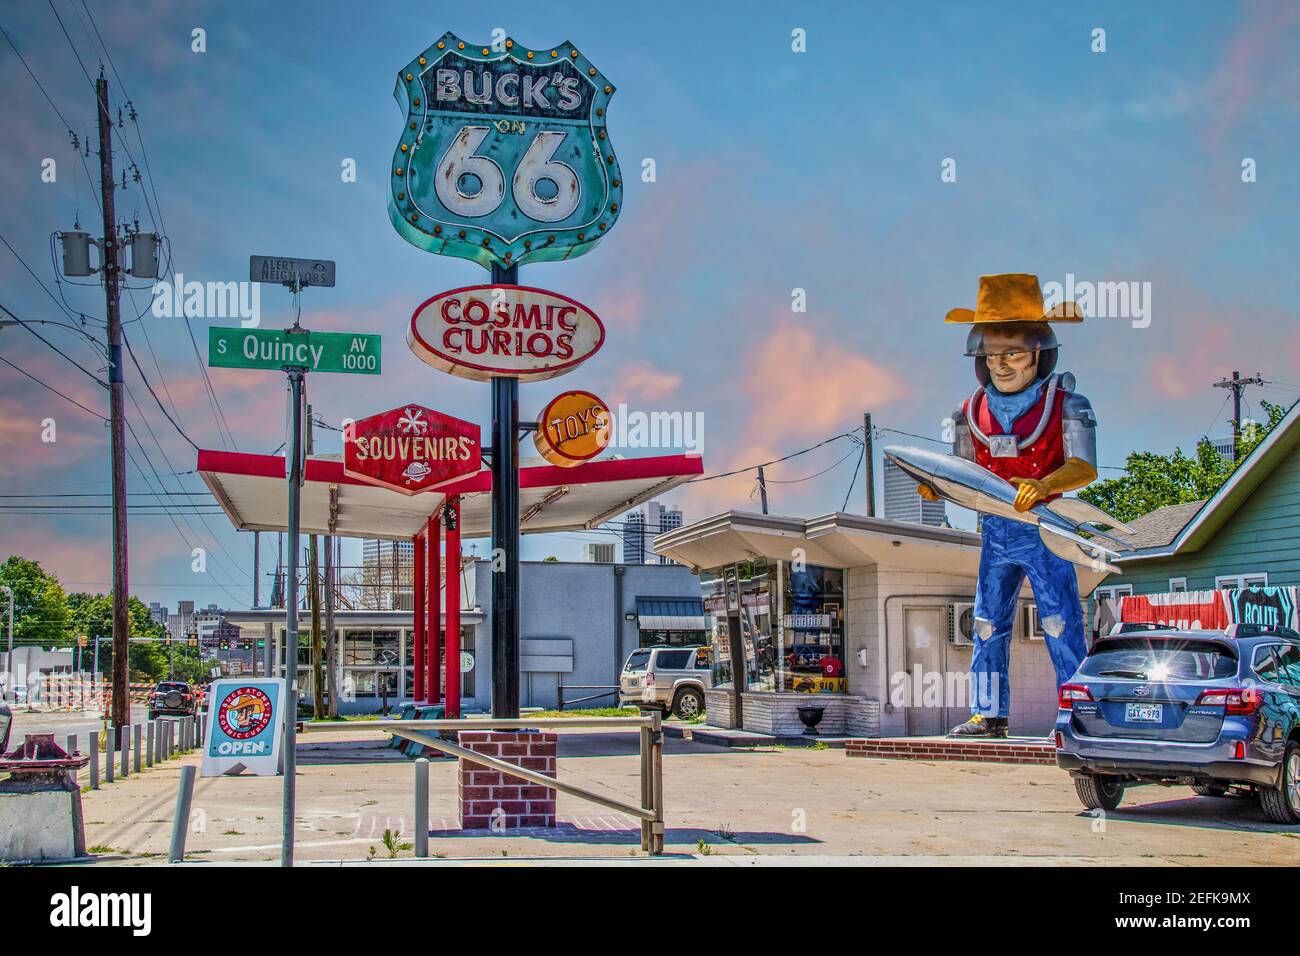 6 13 2020 Tulsa États-Unis - Curio and souvenir Shop Le long de la route 66 à Tulsa, Oklahoma, avec statue de l'espace cowboy tenant une fusée créée à partir de gaz rétro Banque D'Images